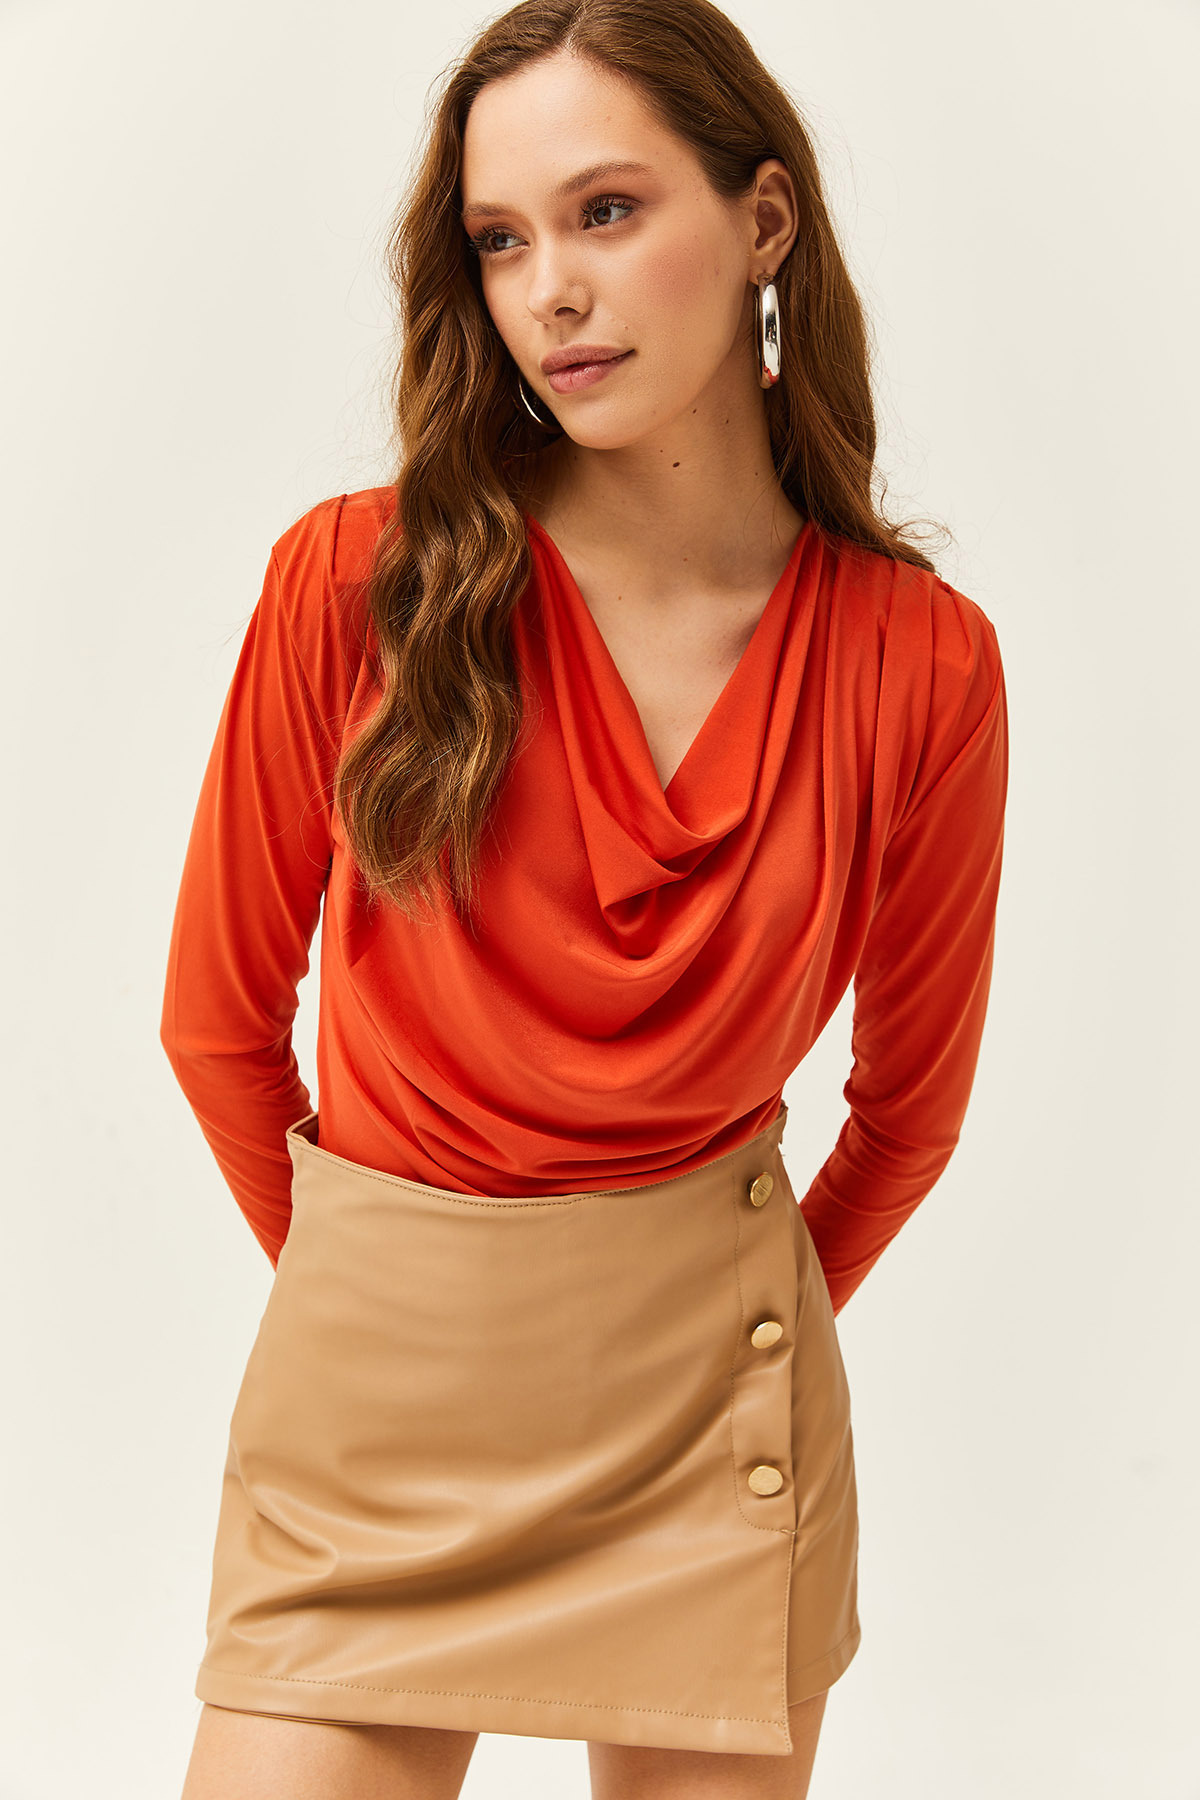 Женская оранжевая блузка со складками и воротником-стойкой Olalook, оранжевый